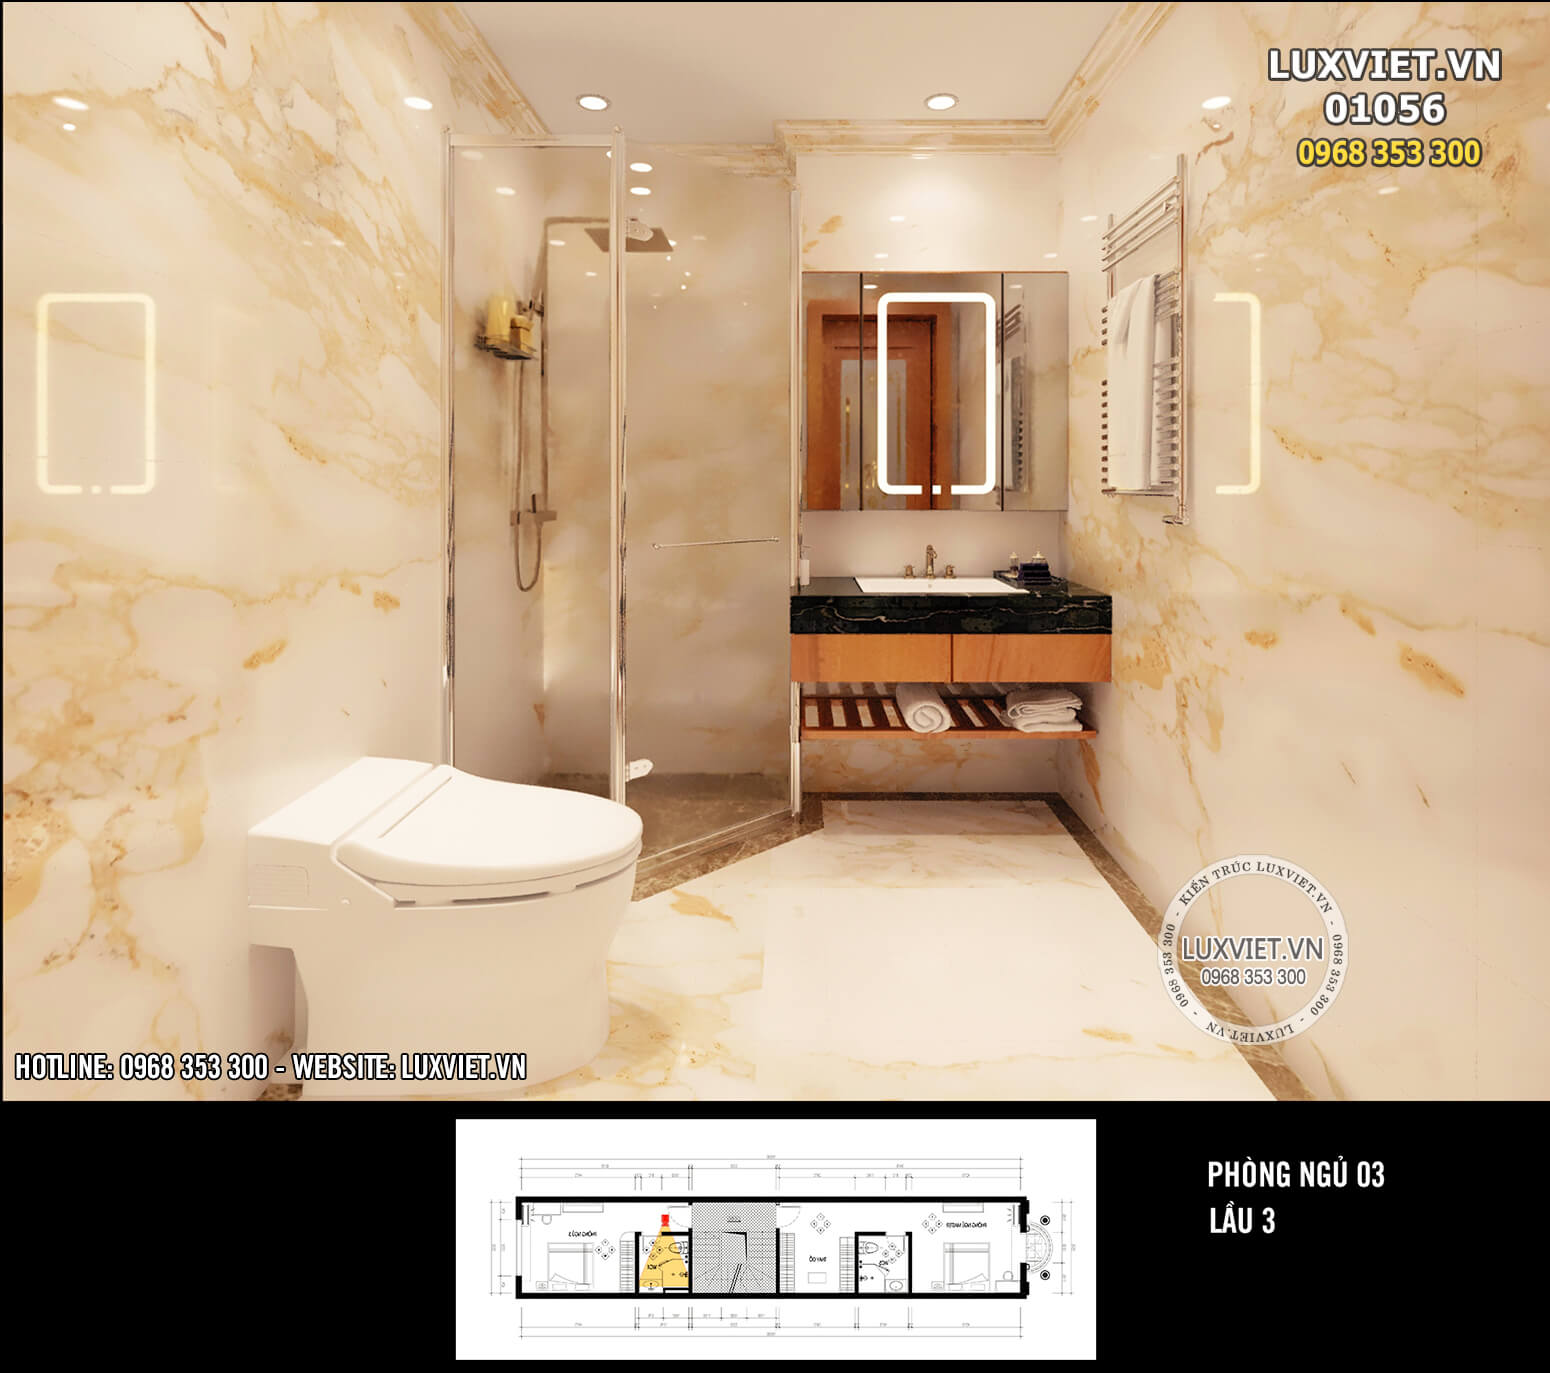 Hình ảnh: Thiết kế phòng tắm sạch sẽ và khoa học - LV 01056